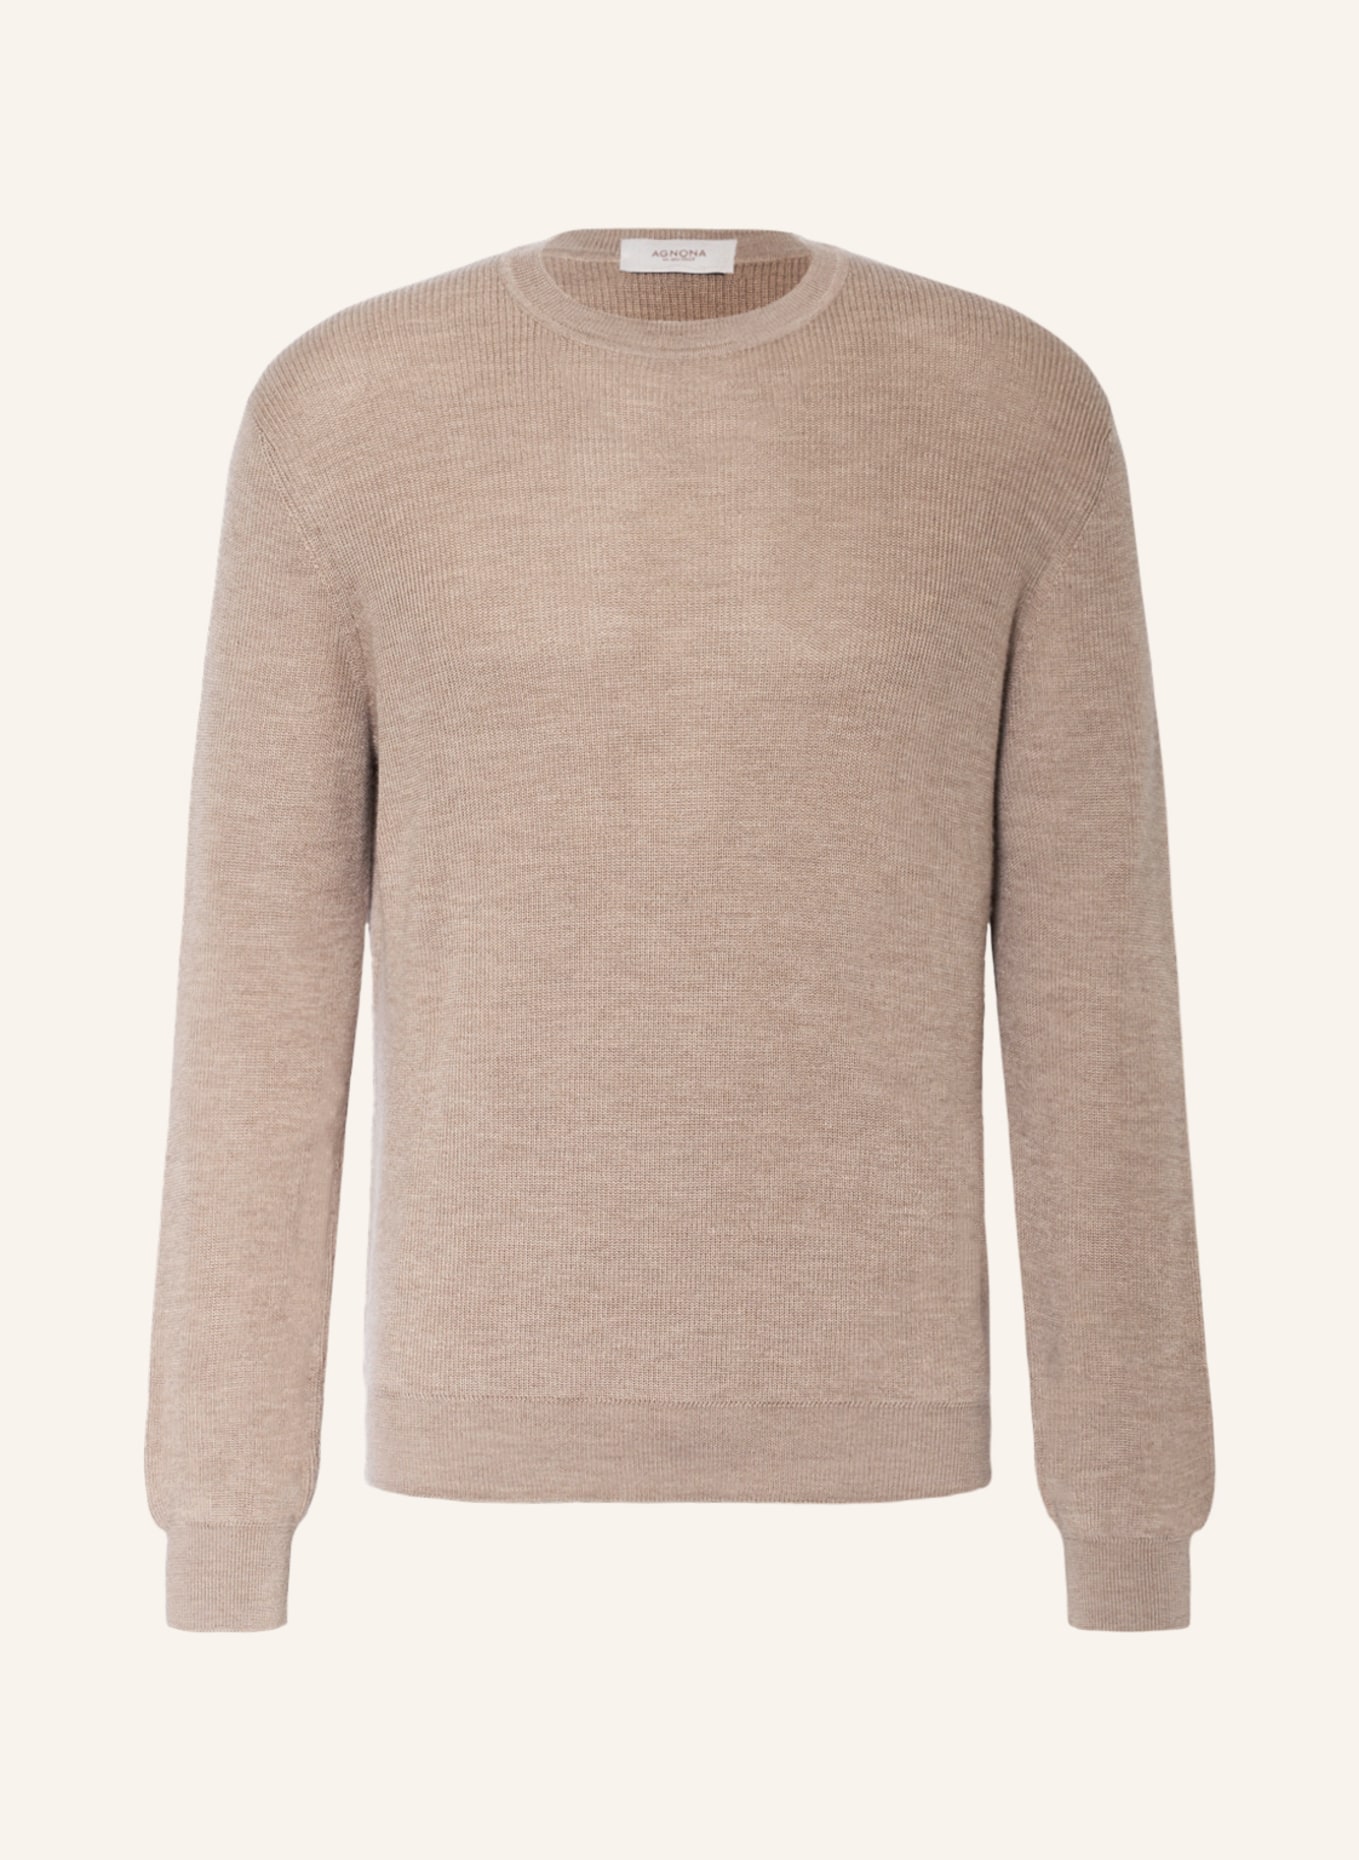 AGNONA Cashmere-Pullover, Farbe: BEIGE (Bild 1)